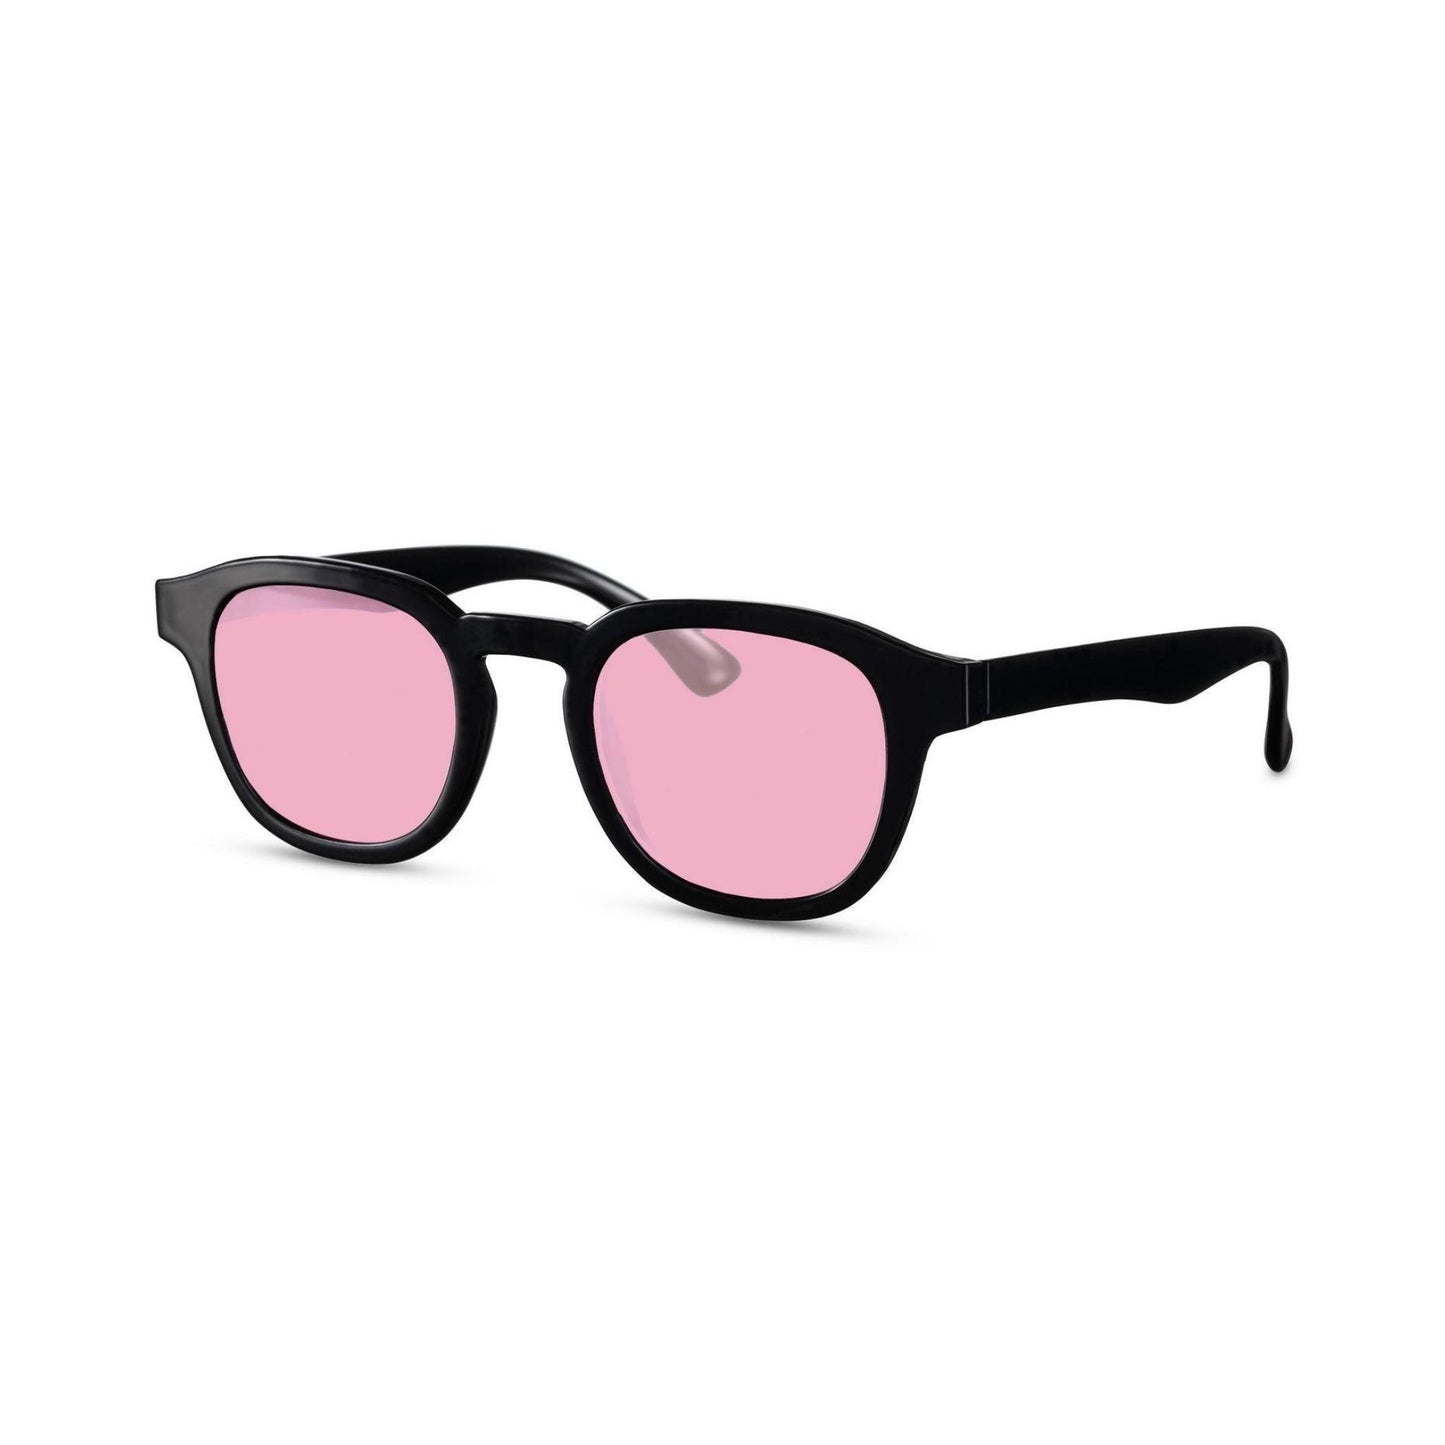 Γυαλιά ηλίου Montreal της Exposure Sunglasses με προστασία UV400 με μαύρο σκελετό και ροζ φακό.Πλάγια προβολή.